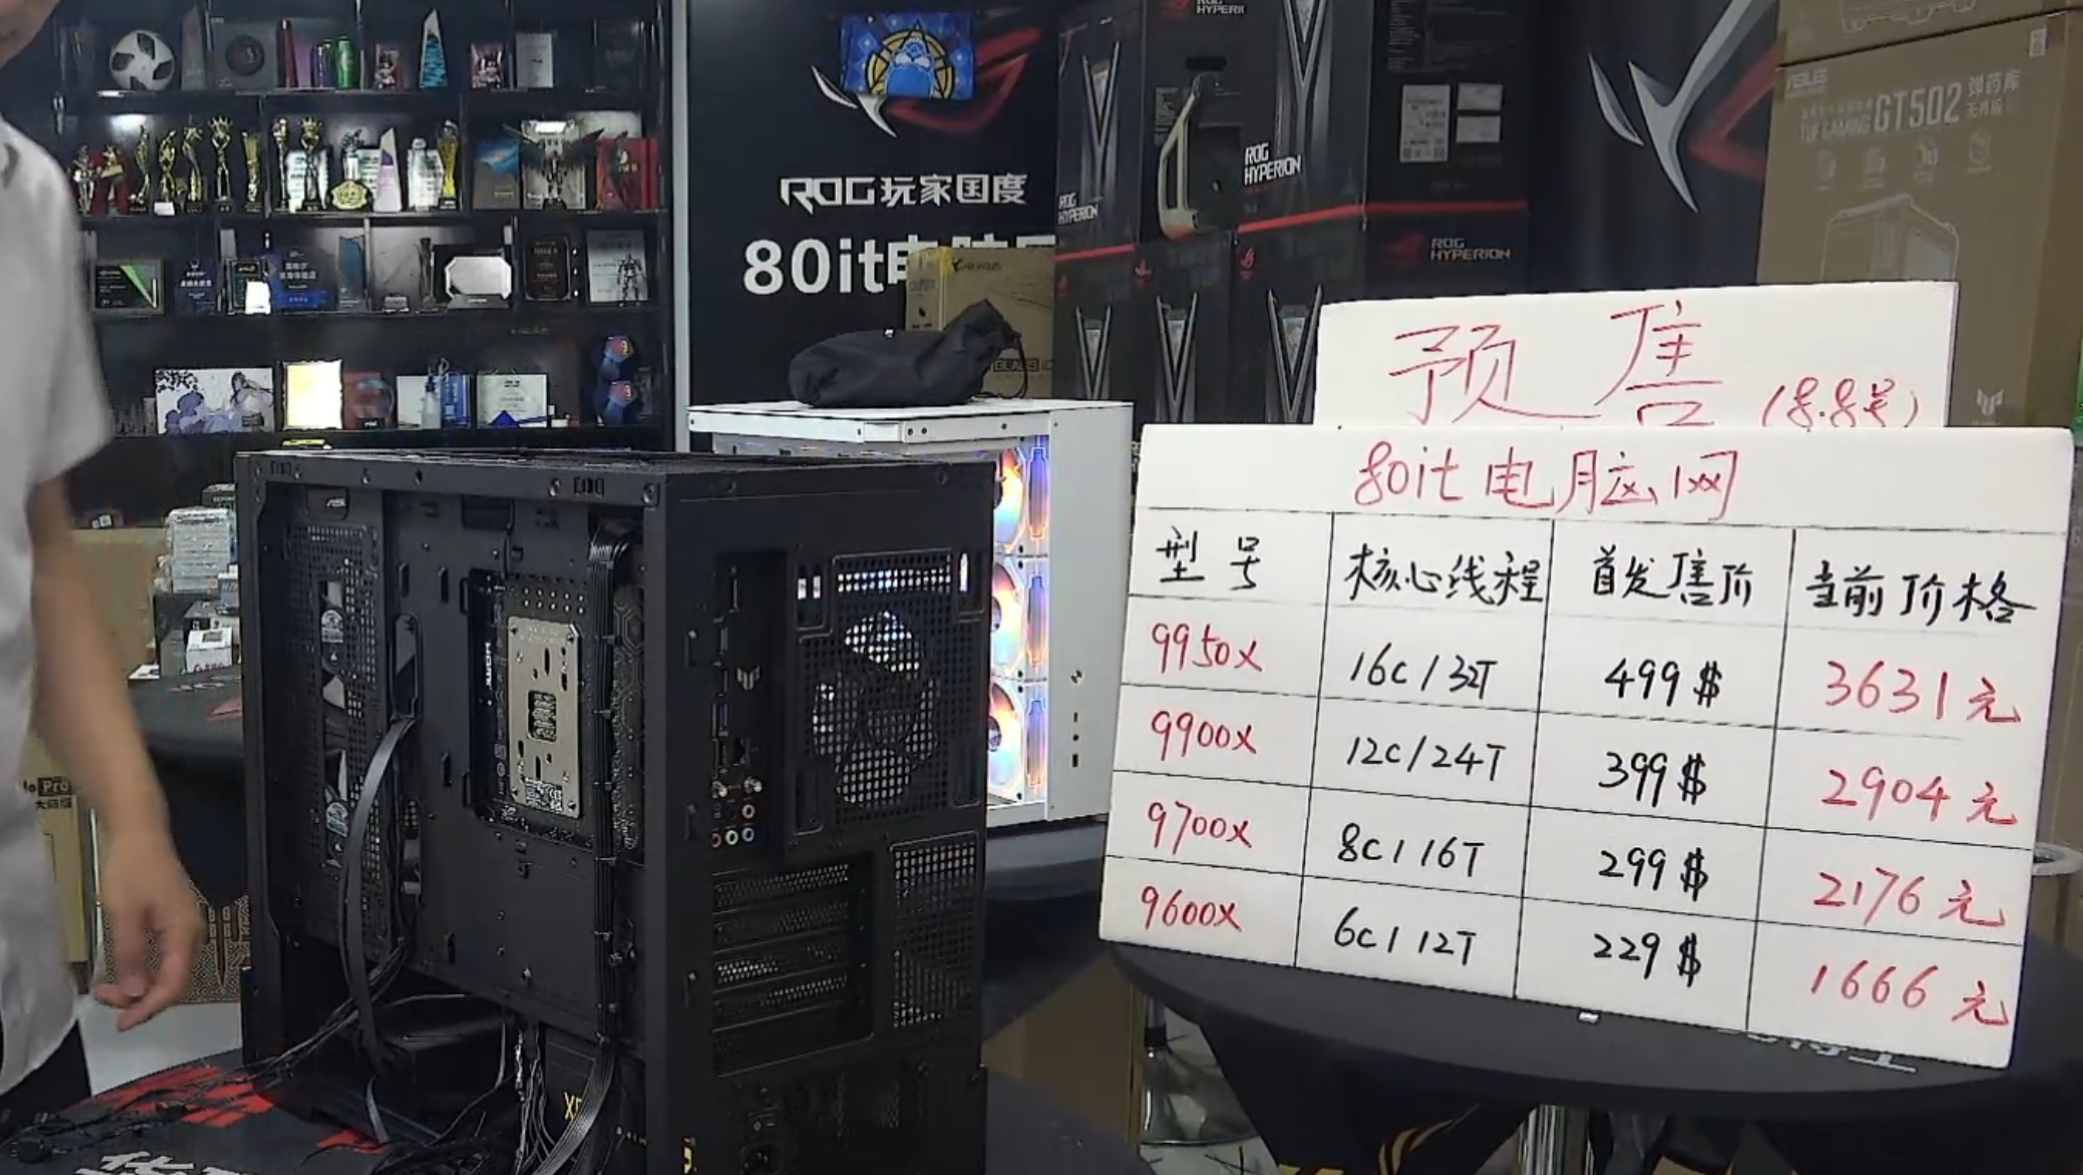 Chinese Shopkeeper Shows AMD Ryzen 9000 "Zen 5" Desktop CPU Prices, Lower Than Ryzen 7000 Series 2